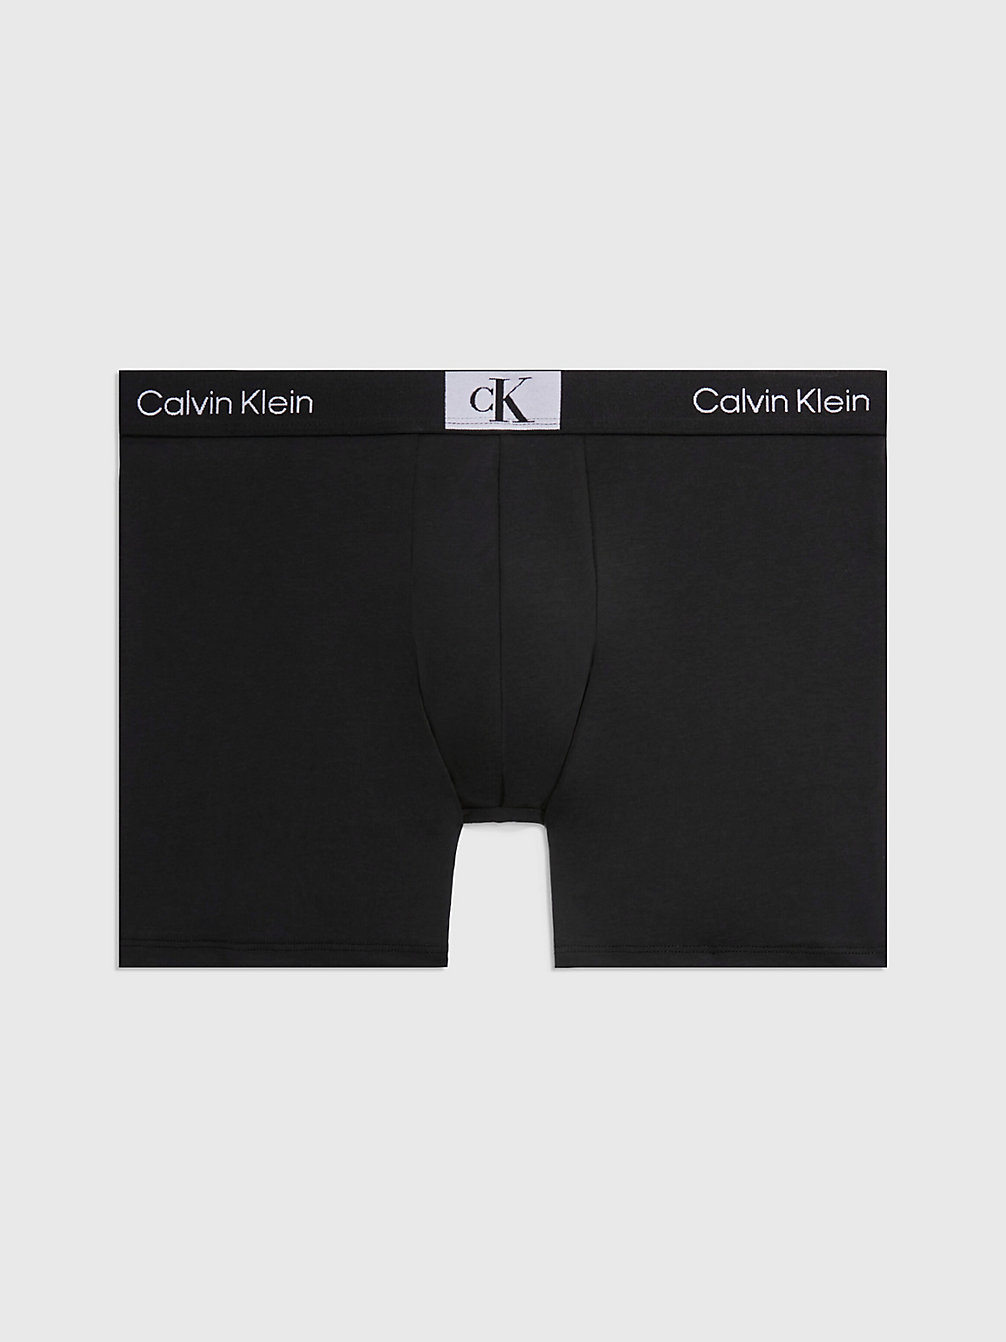 Bóxers Largos - Ck96 > BLACK > undefined mujer > Calvin Klein